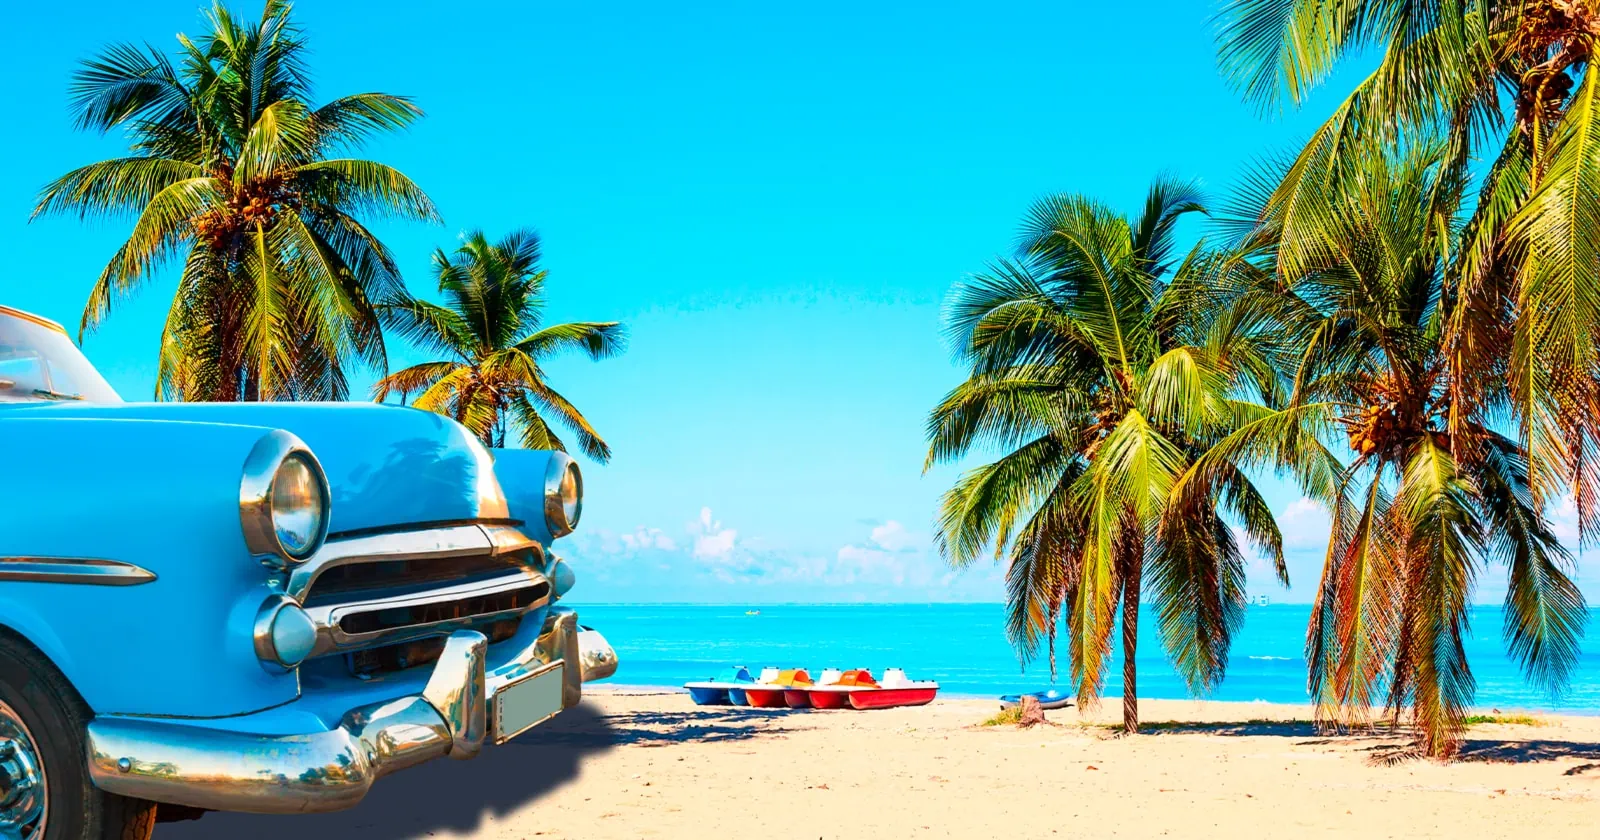 Temporada Alta del Turismo en Cuba ¿Tendrá el Despegue Esperado?